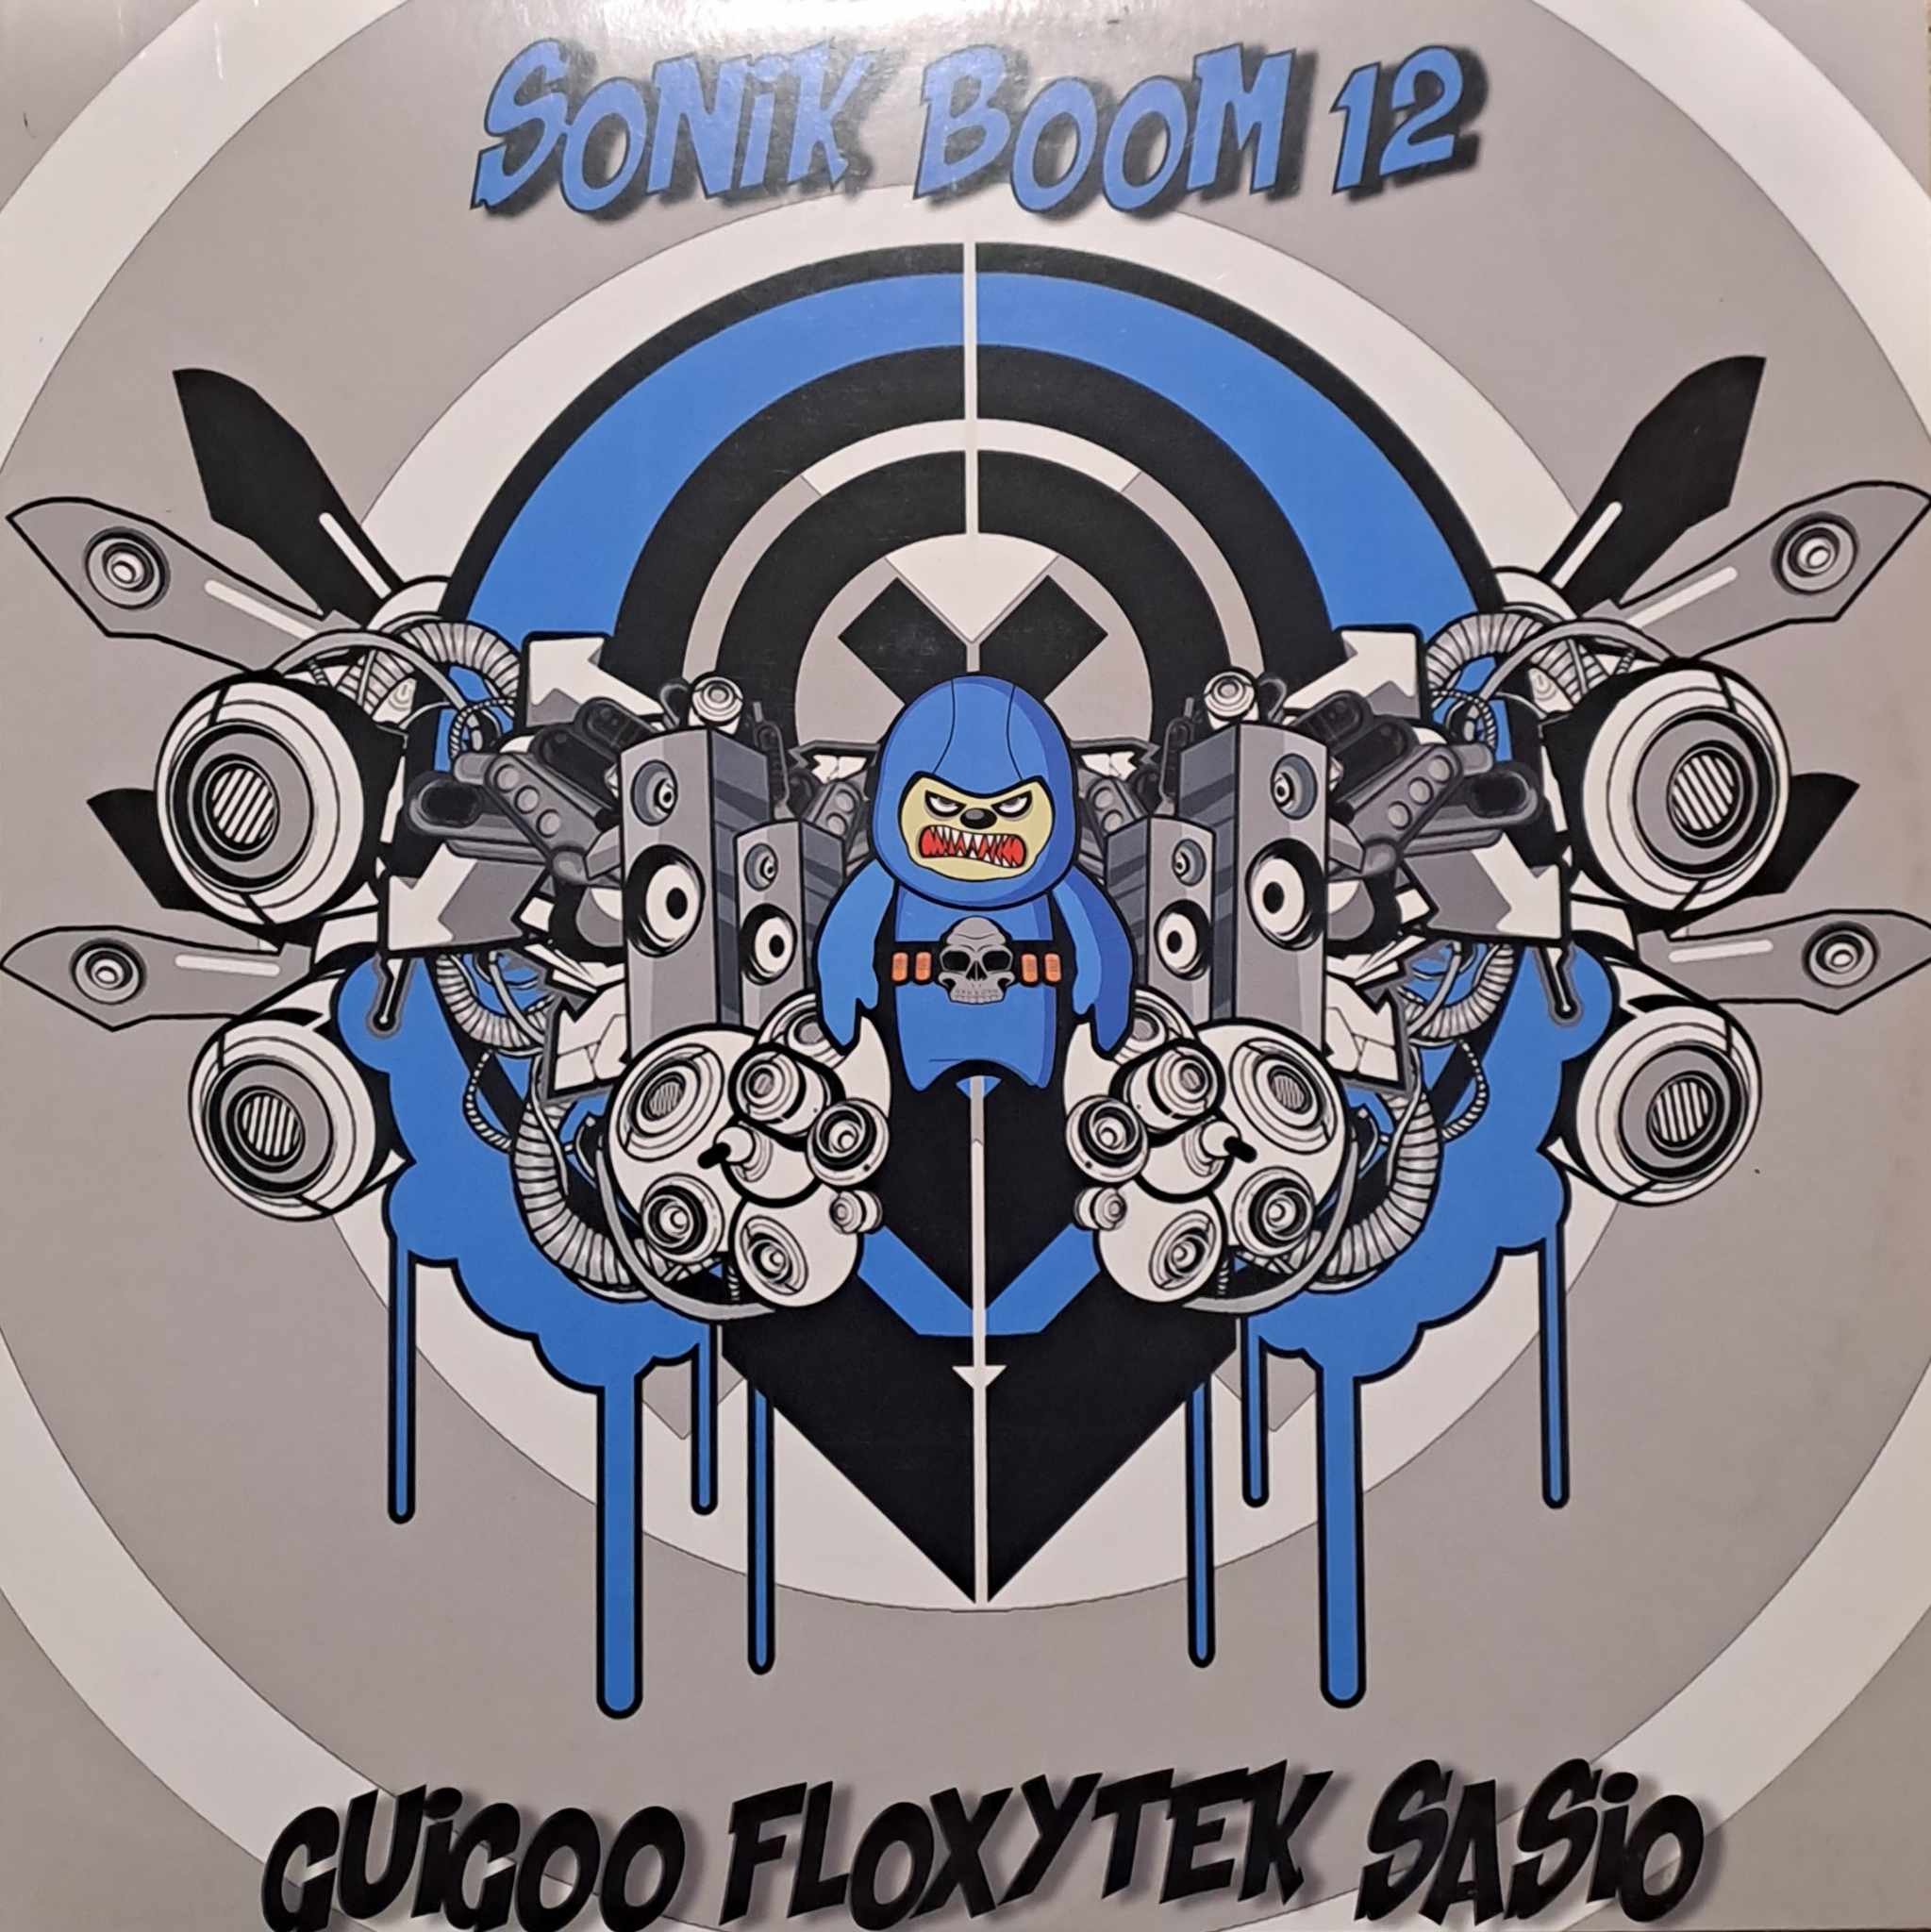 Sonik Boom 12 - vinyle tribecore